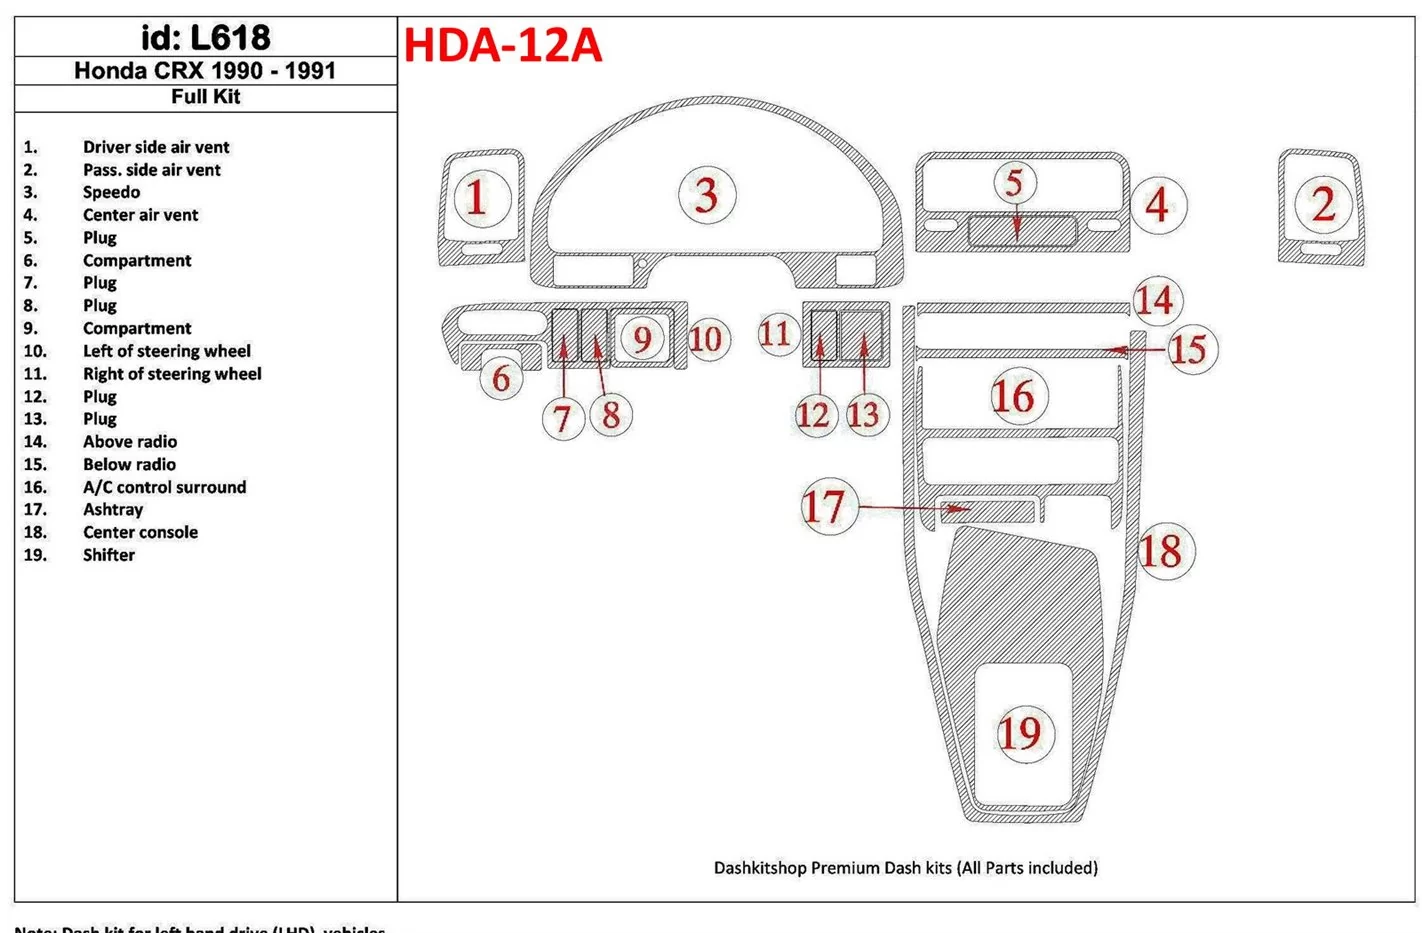 Honda CRX 1990-1991 Voll Satz, 19 Parts set BD innenausstattung armaturendekor cockpit dekor - 1- Cockpit Dekor Innenraum